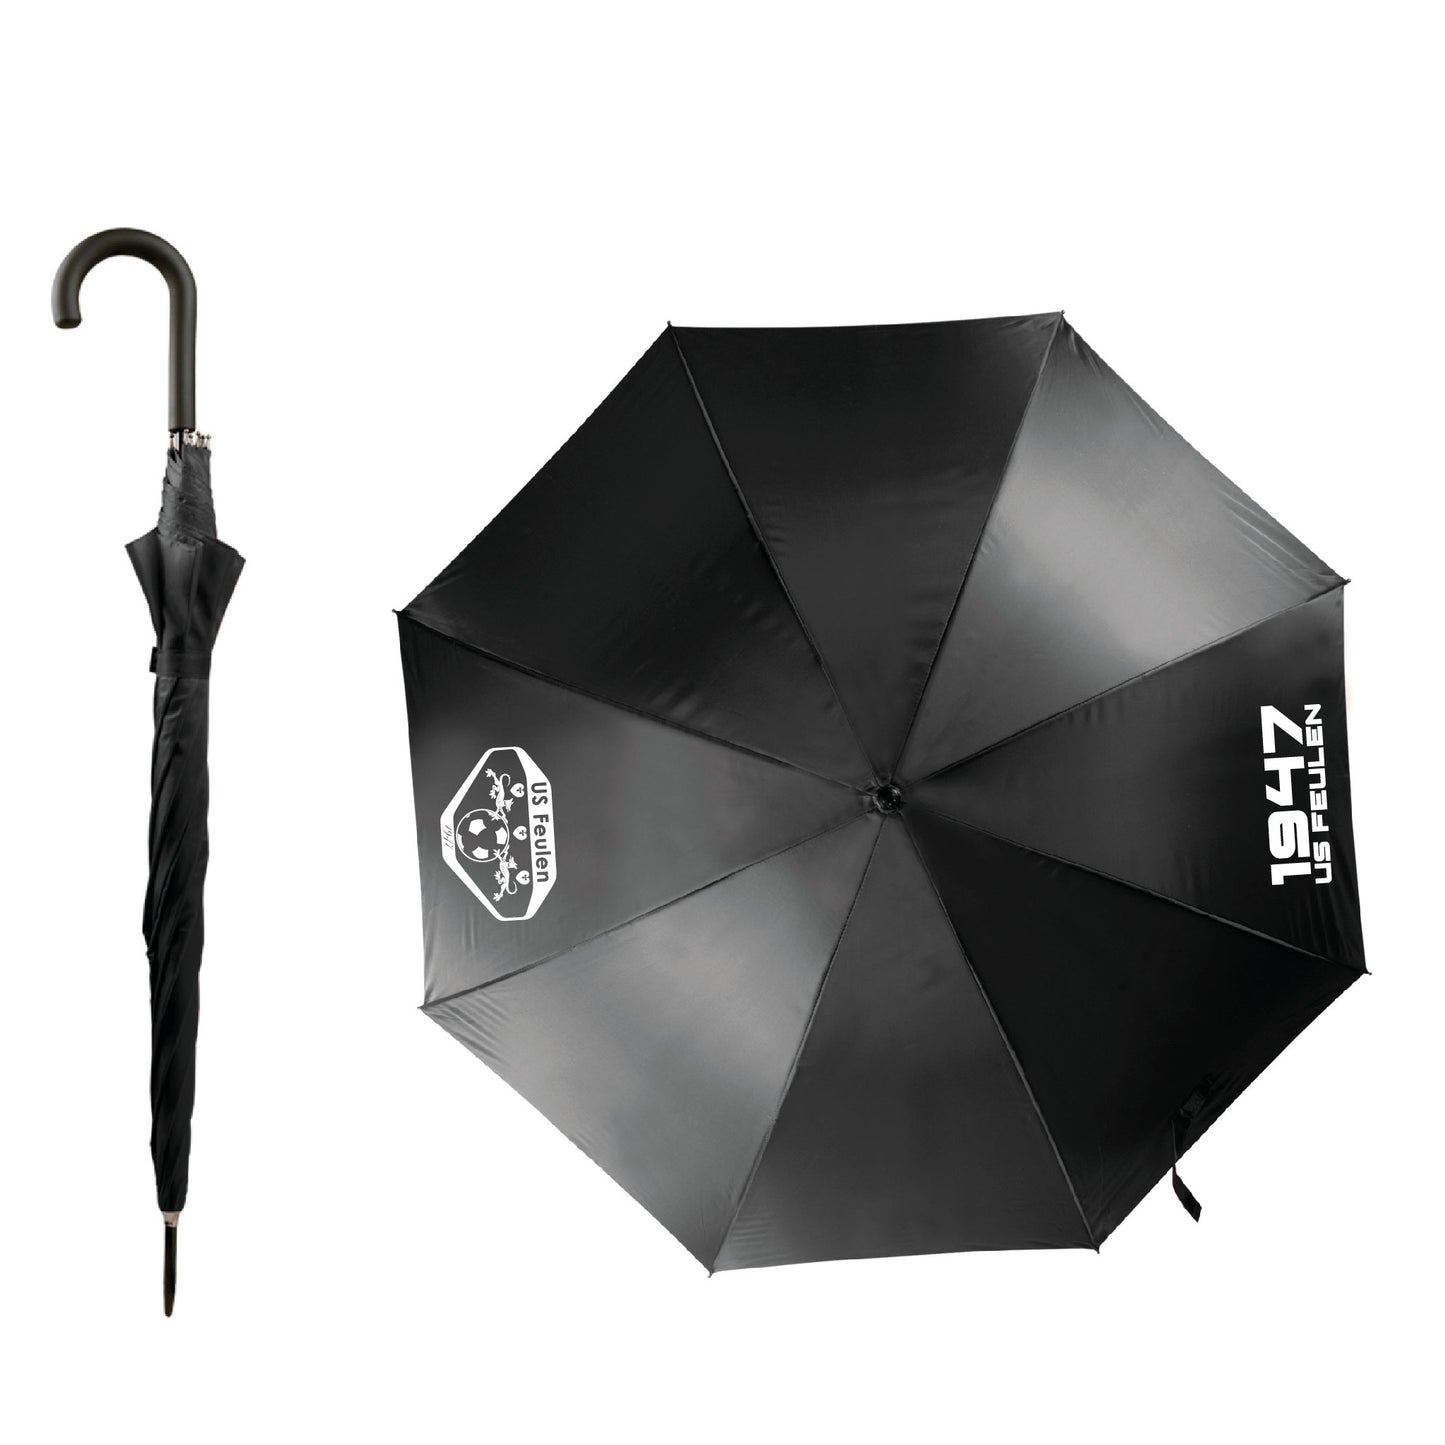 Parapluie - US Feulen (KI2021)